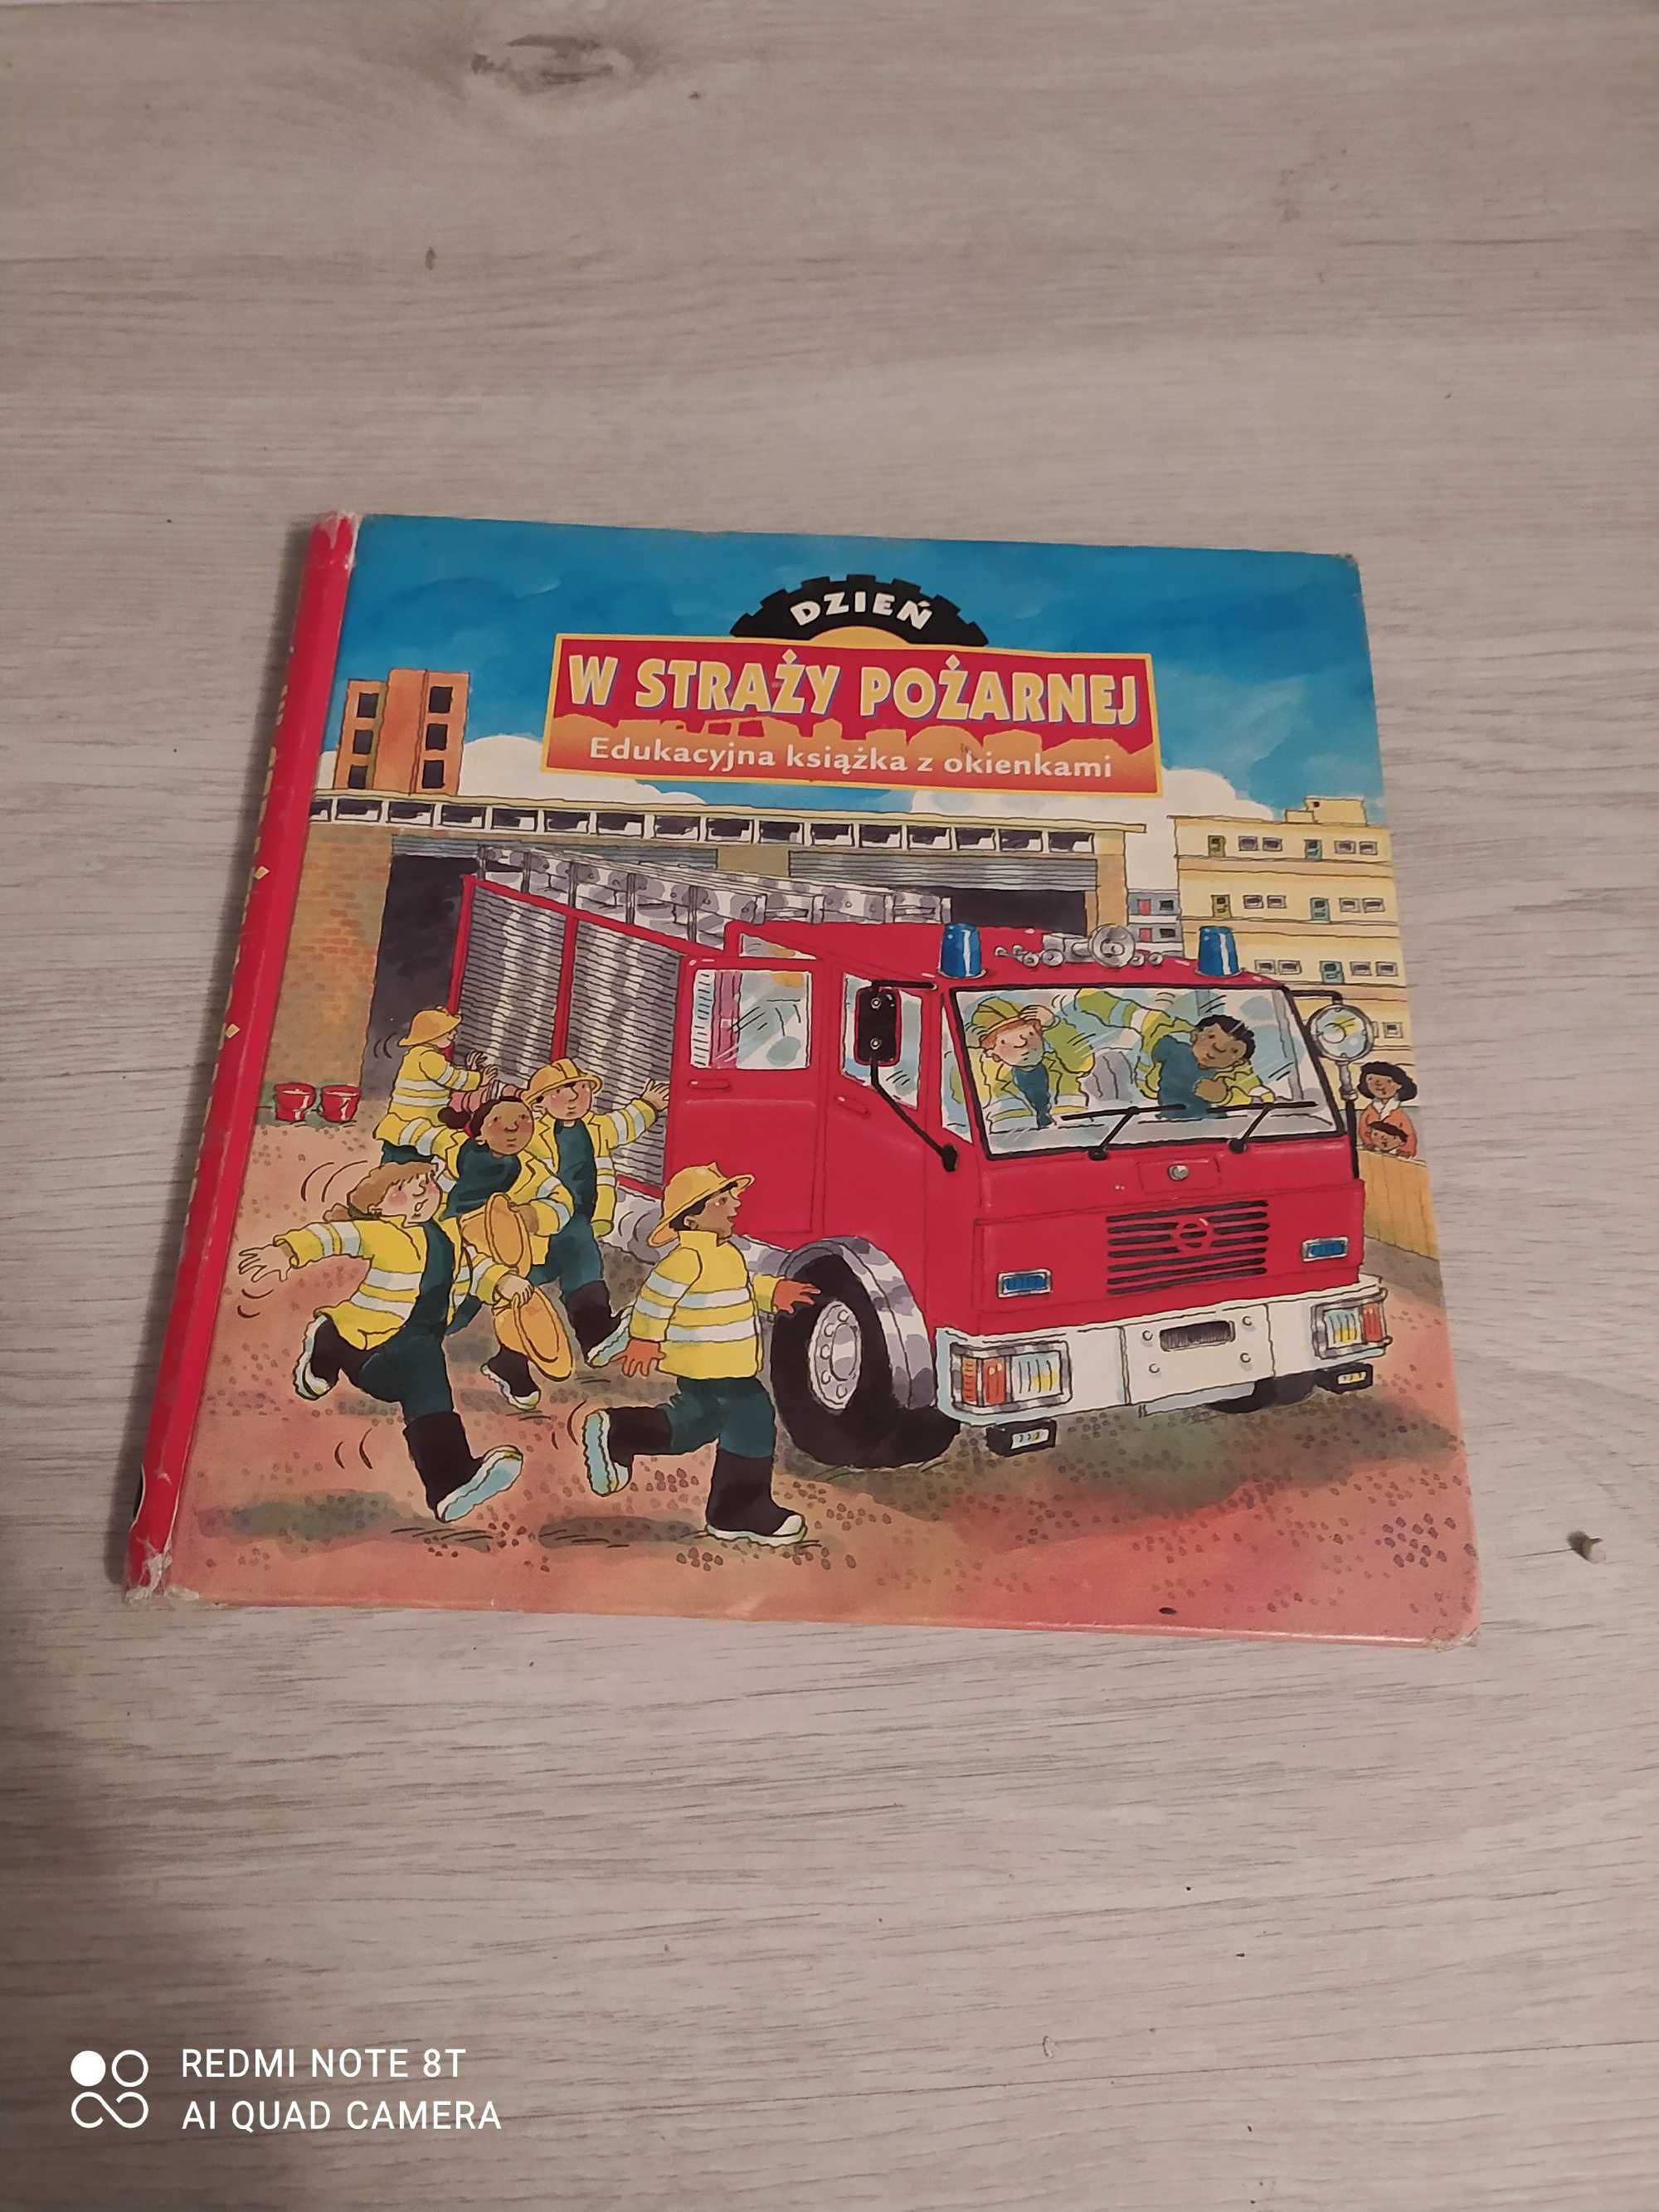 Sprzedam książkę „w straży pożarnej” dla dzieci